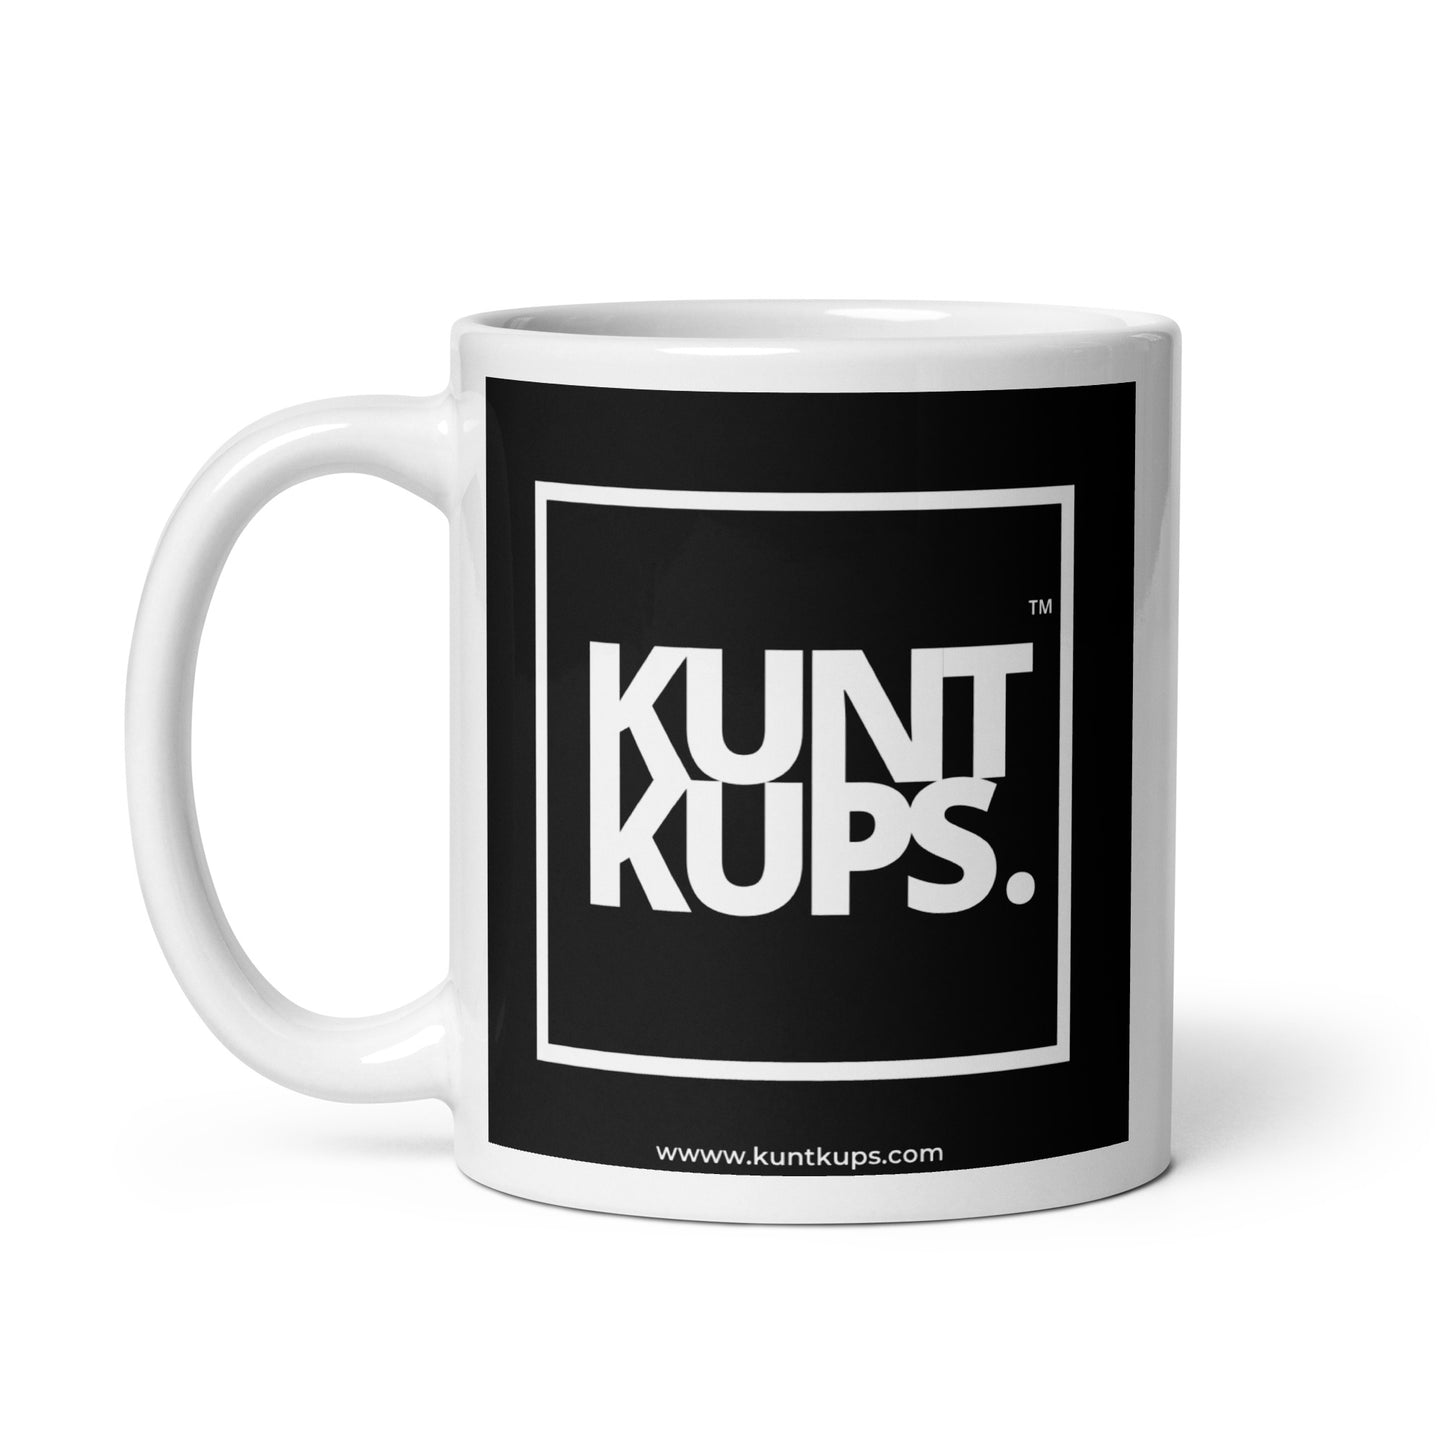 KUNT KUPS - The OG!